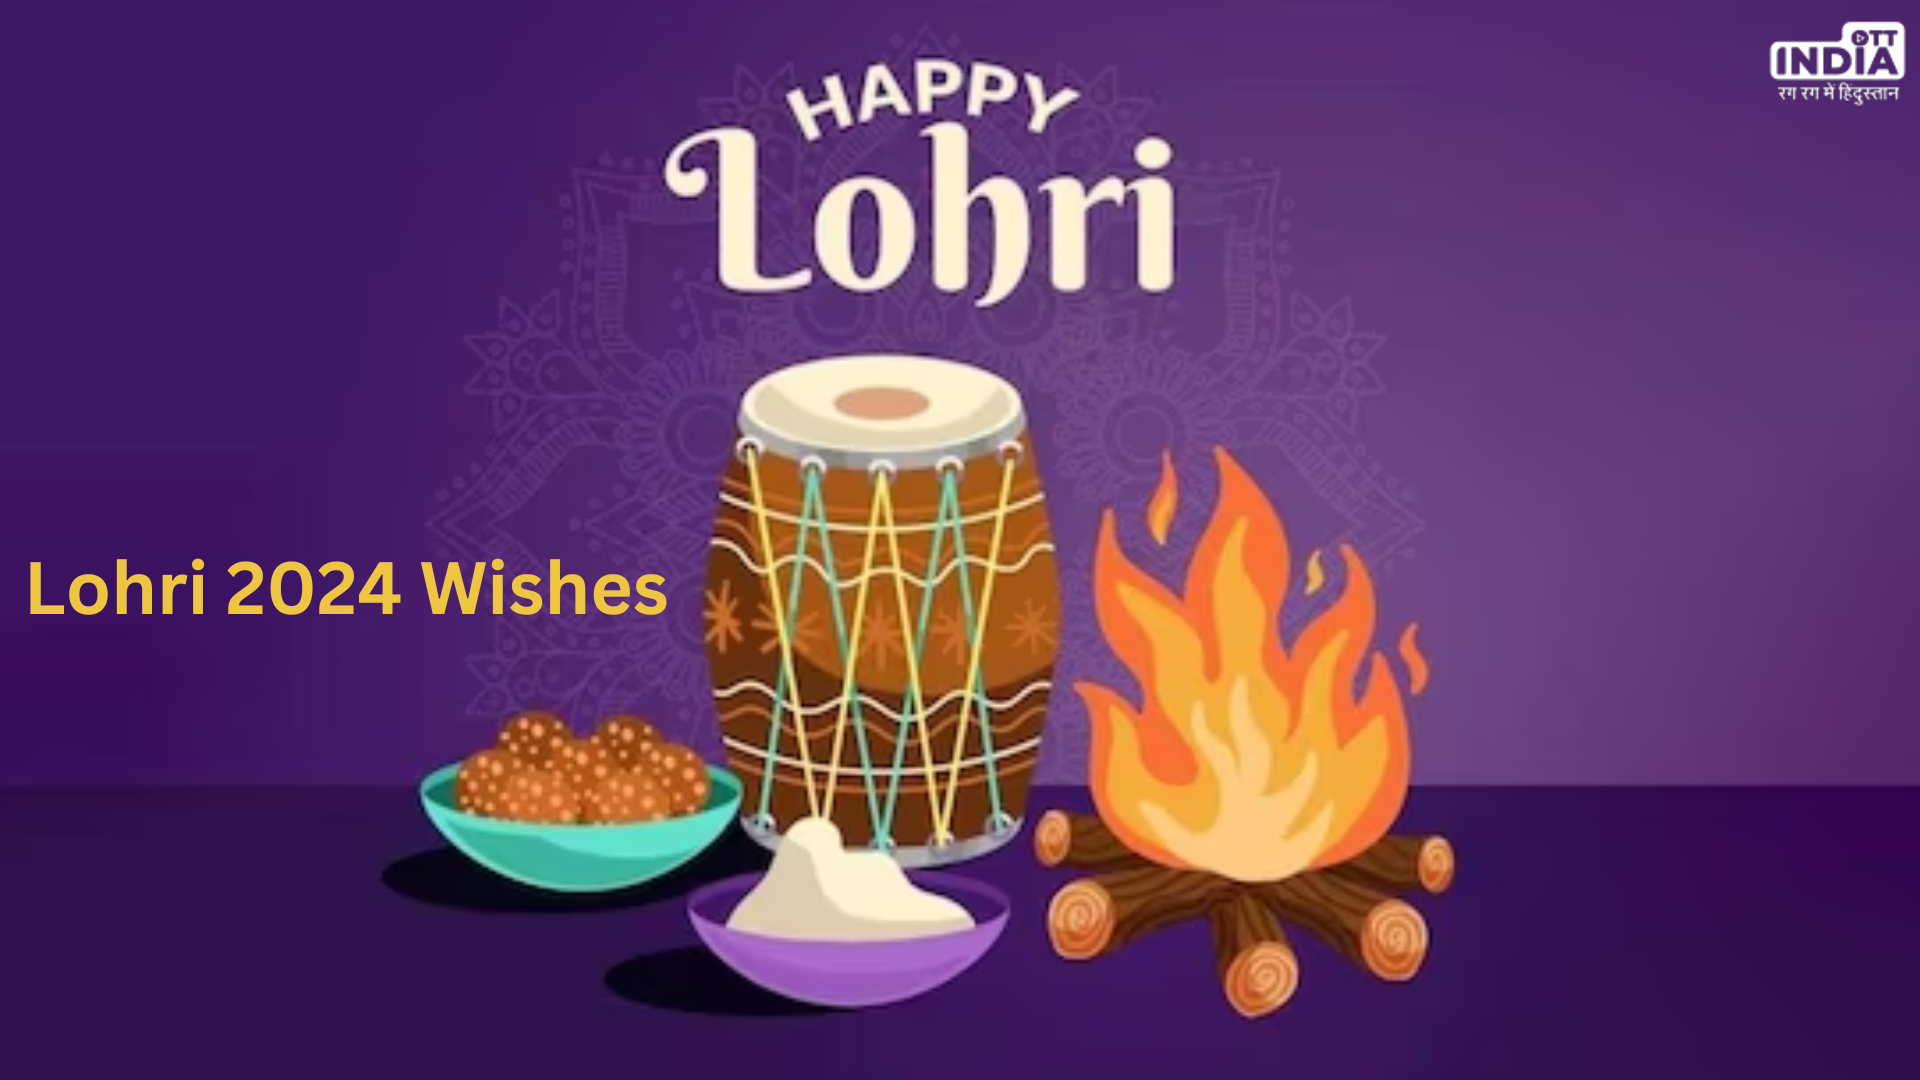 Lohri 2024 Wishes: इन संदेशों के जरिए अपनों को दे लोहड़ी की बधाईयां